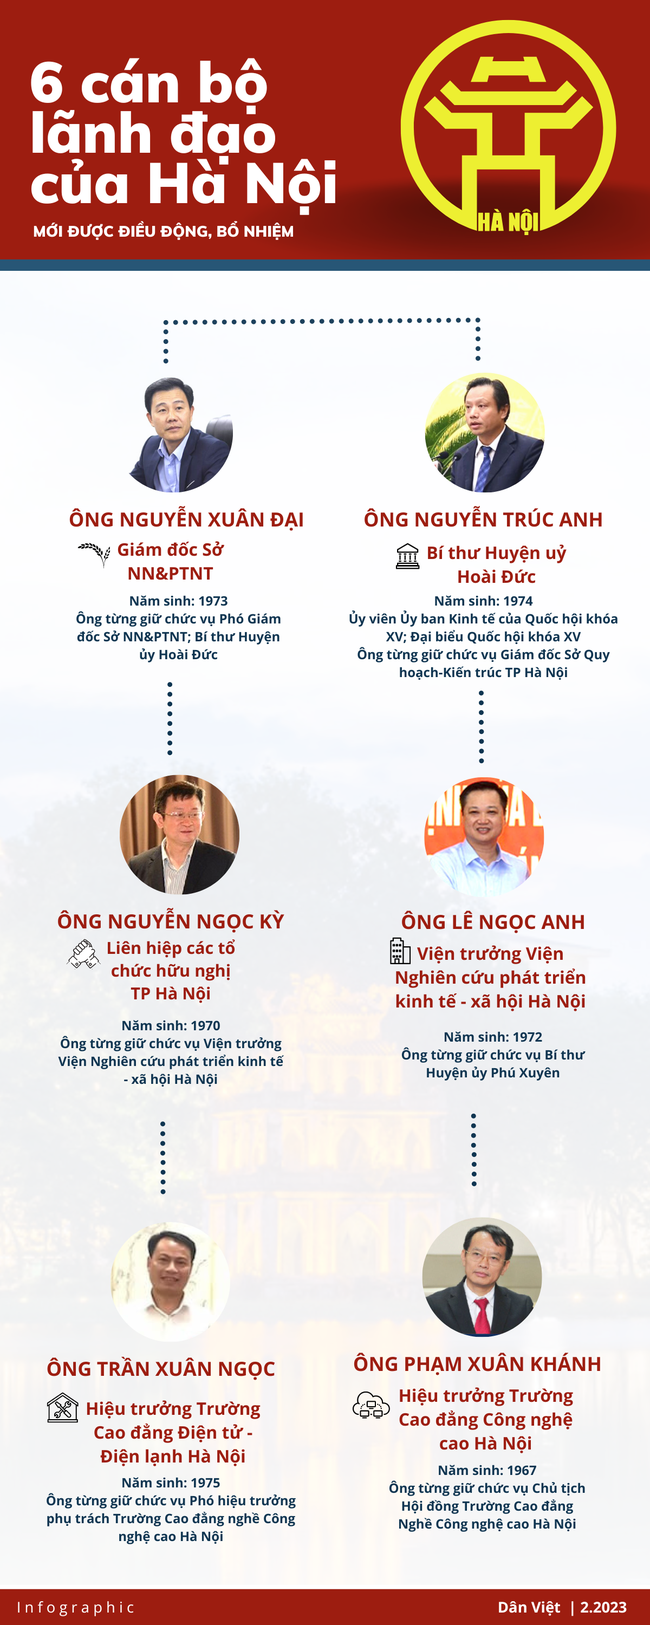 Infographic: Chân dung 6 cán bộ lãnh đạo của Hà Nội được điều động, bổ nhiệm giữ chức vụ mới trong tuần - Ảnh 1.